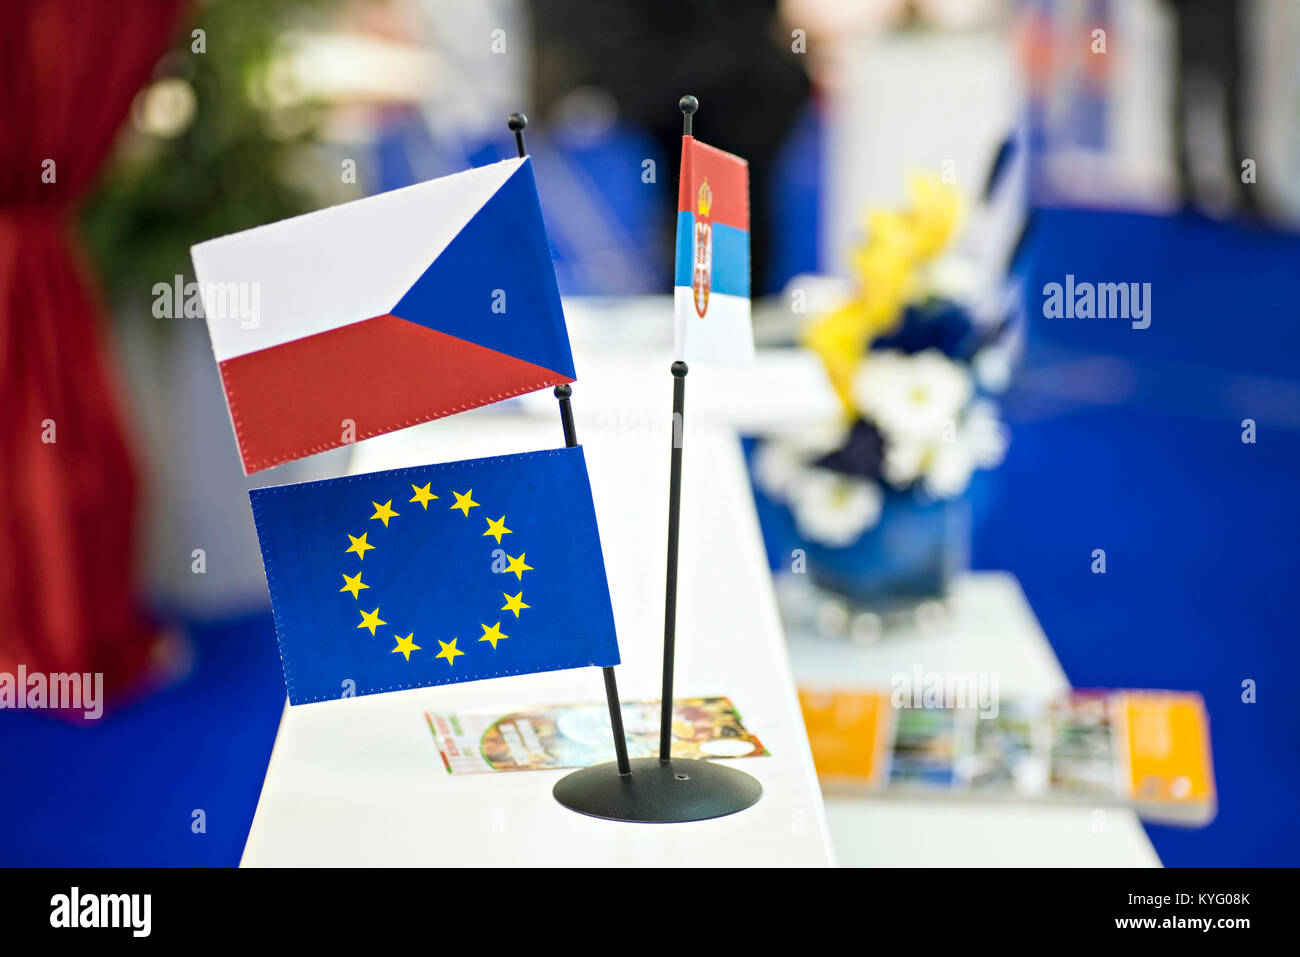 Drapeaux nationaux avec drapeau de l'Union européenne Banque D'Images